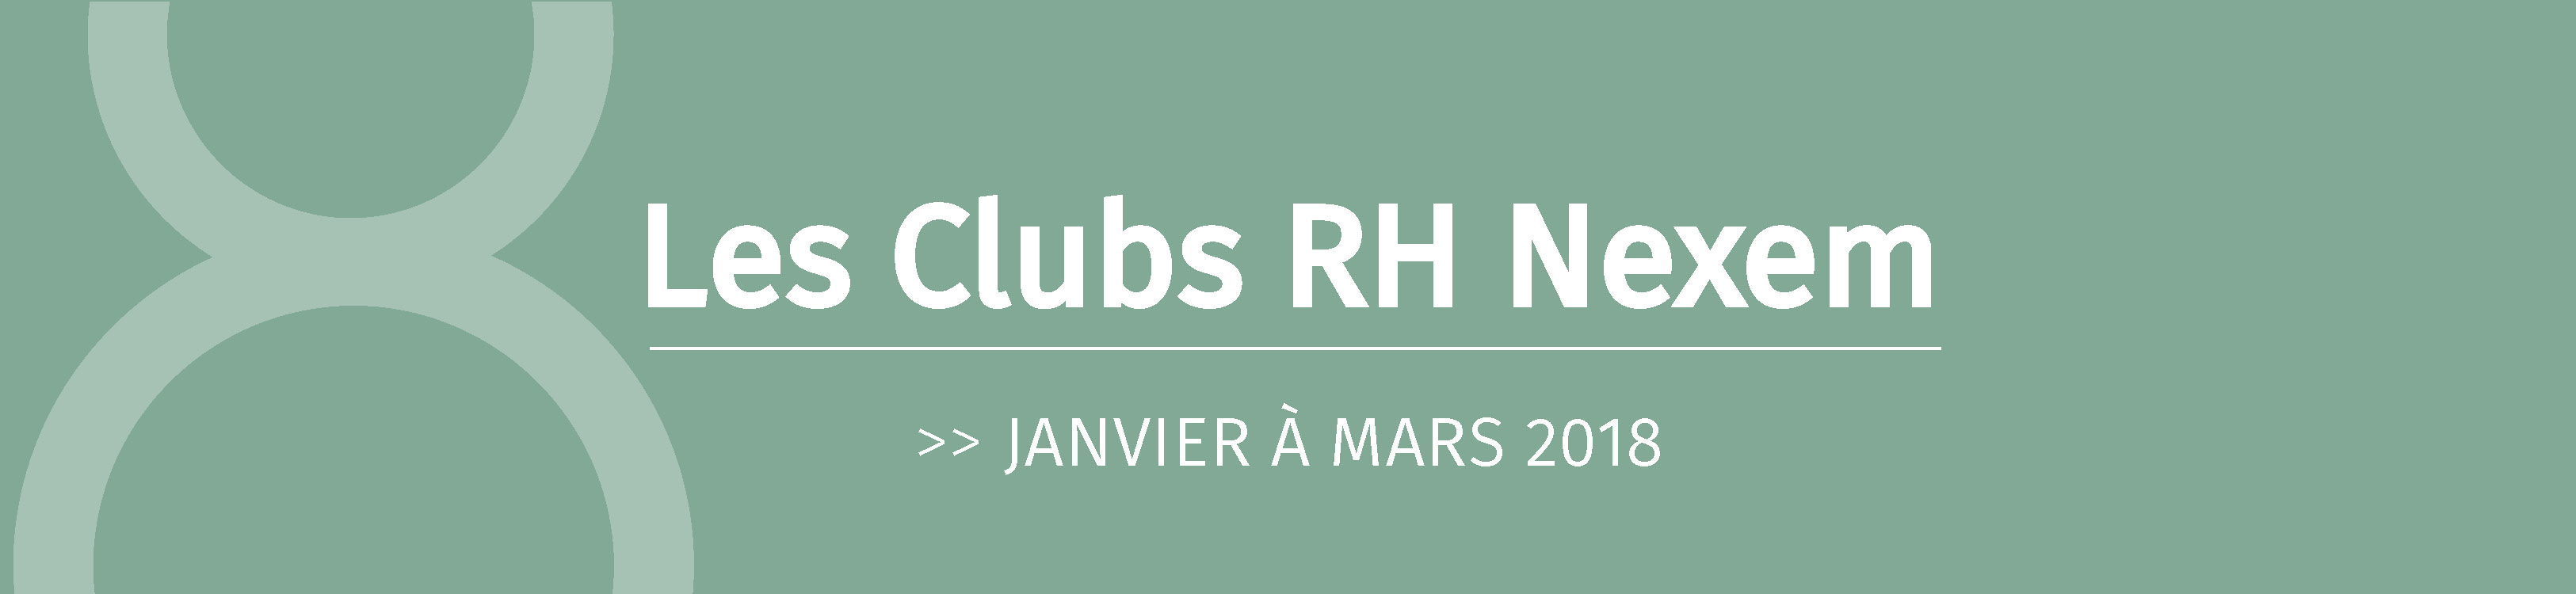 Les Clubs RH Nexem - Janvier à mars 2018